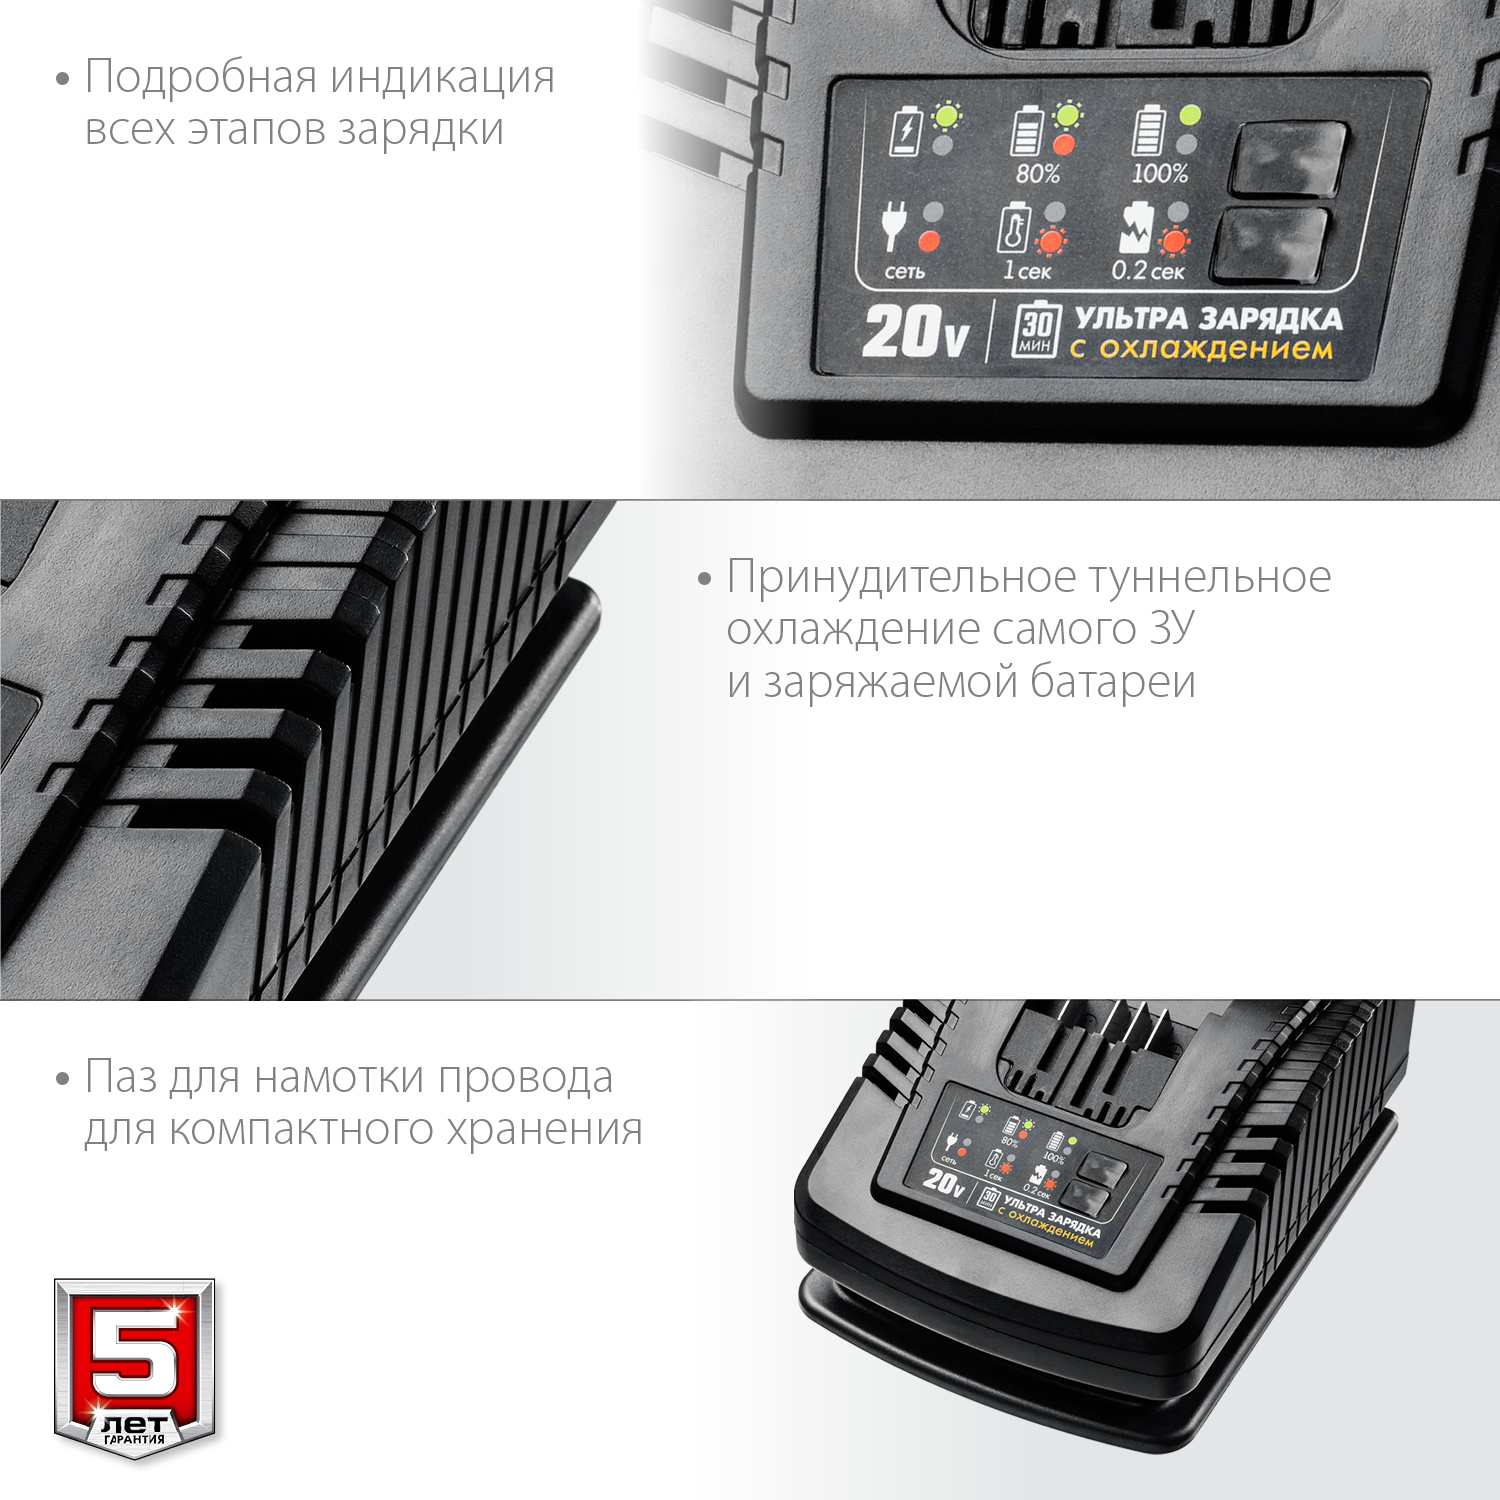 Зарядное устройство 20В 6А Li-Ion ЗУБР Профессионал RT7-20-6